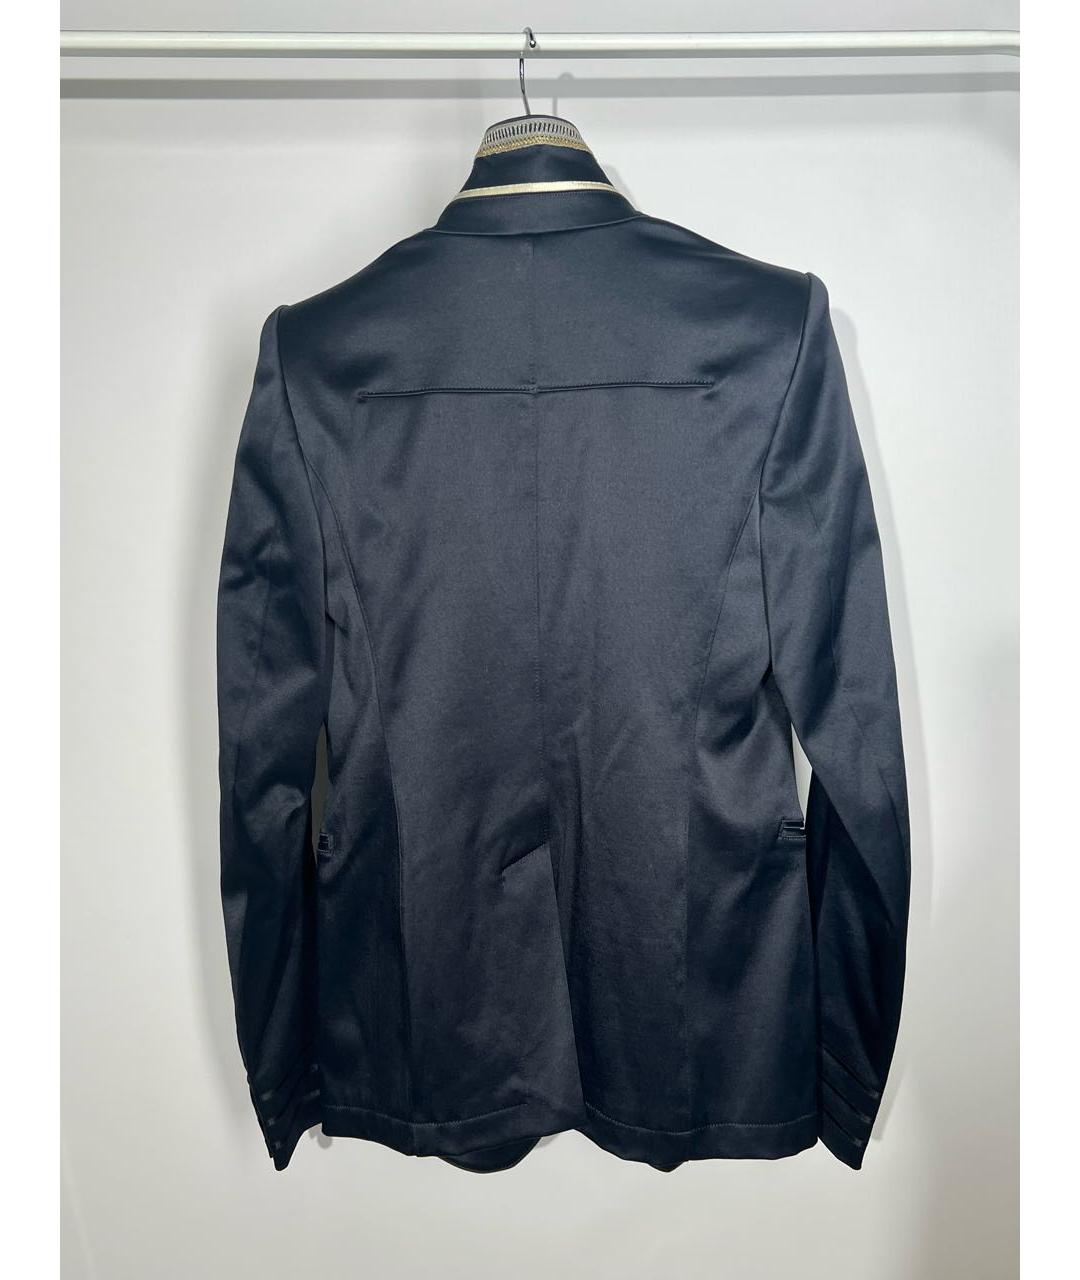 LGB Темно-синий жакет/пиджак, фото 2